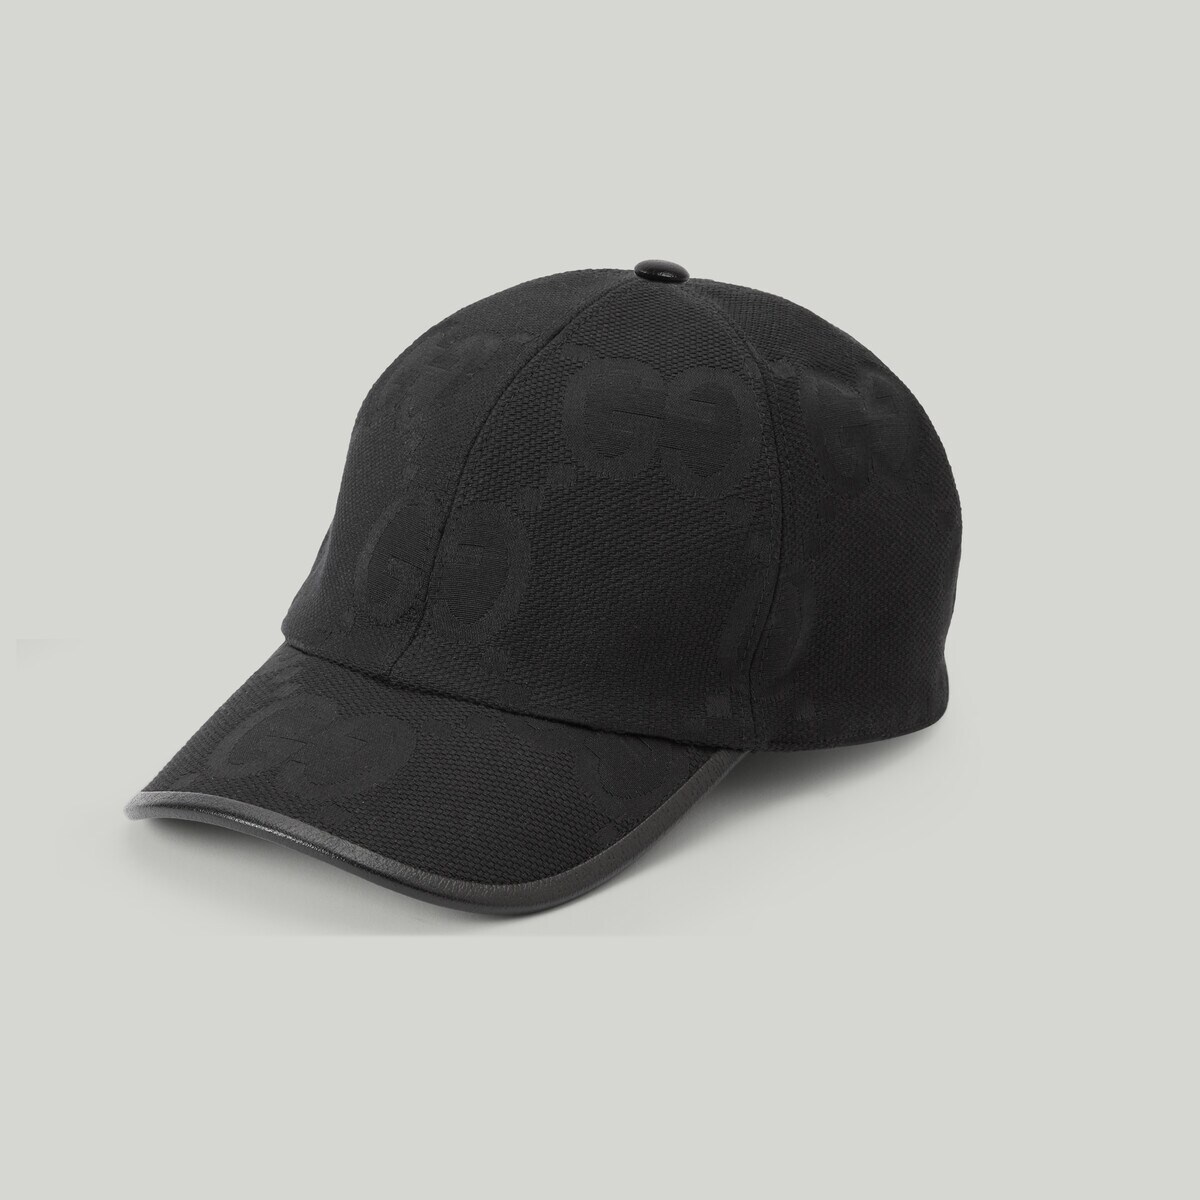 Jumbo GG baseball hat - 1